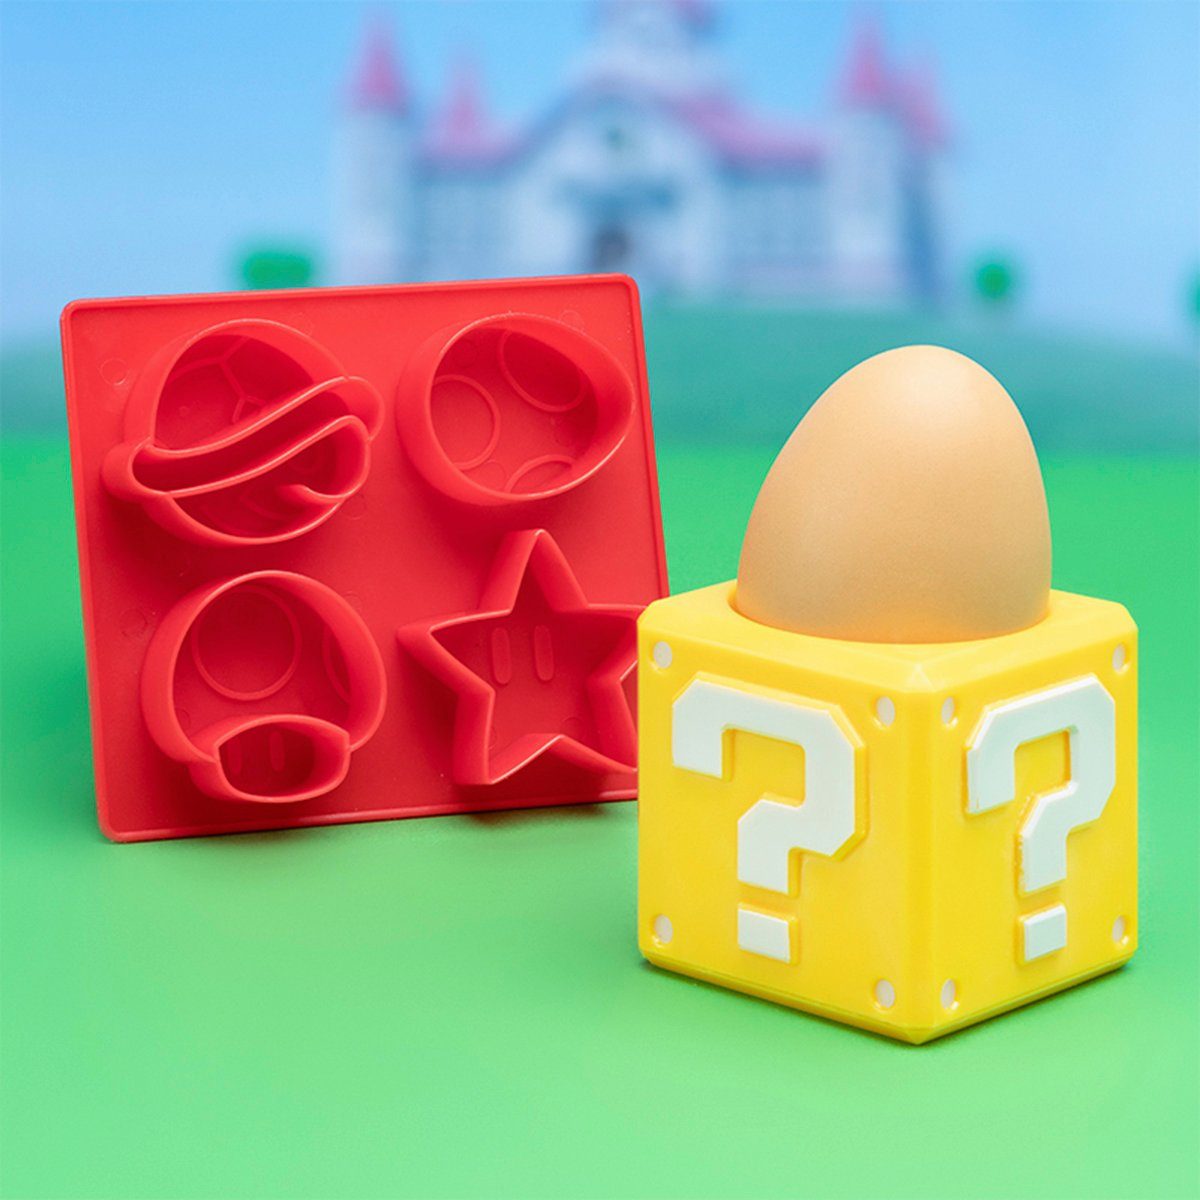 und Toastschneider Eierbecher Paladone Super Backform Mario